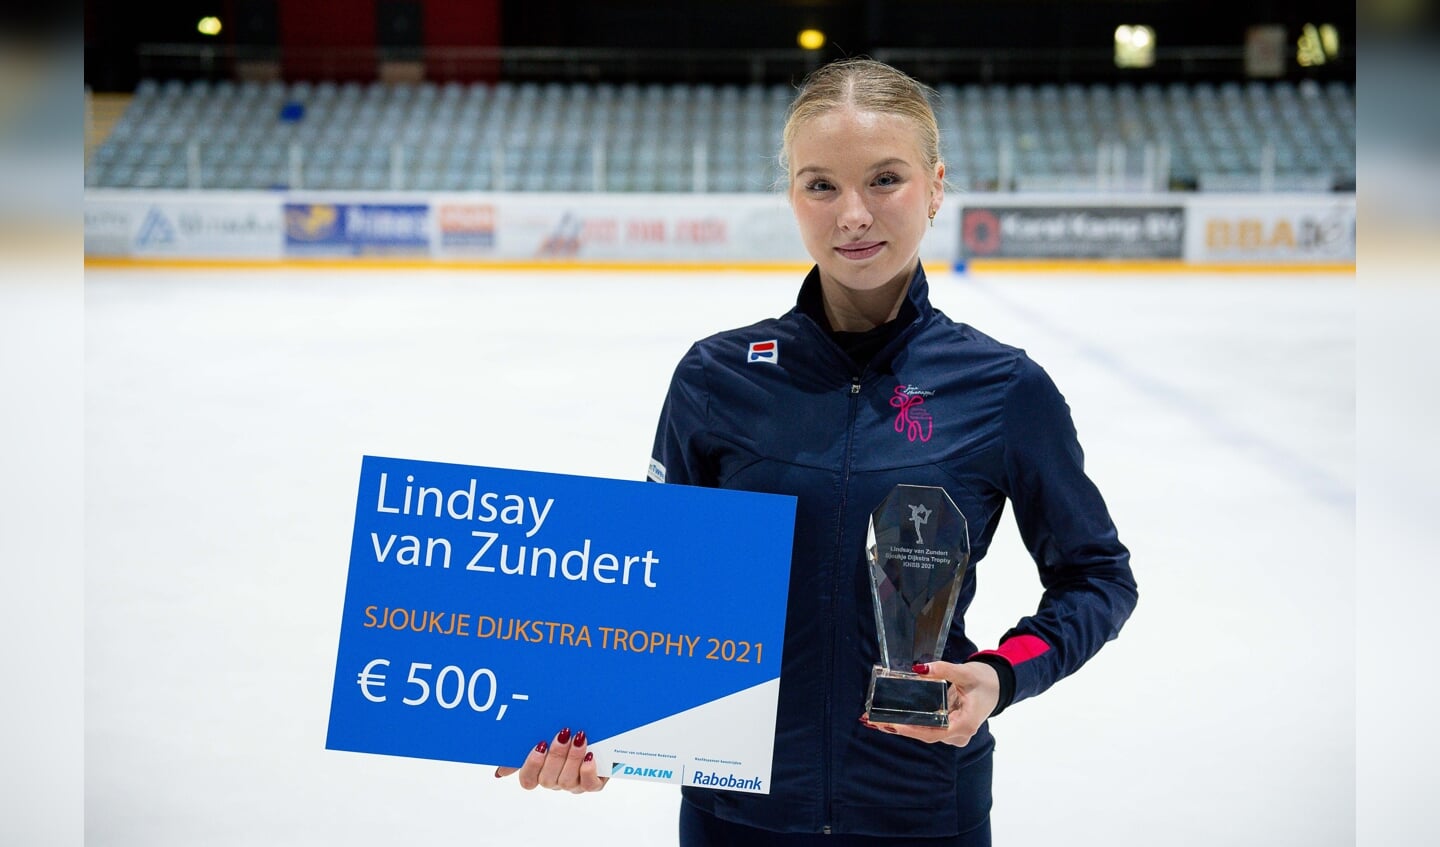 Lindsay van Zundert heeft zojuist de Sjoukje Dijkstra Trophy 2021 ontvangen uit handen van de naamgeefster. 